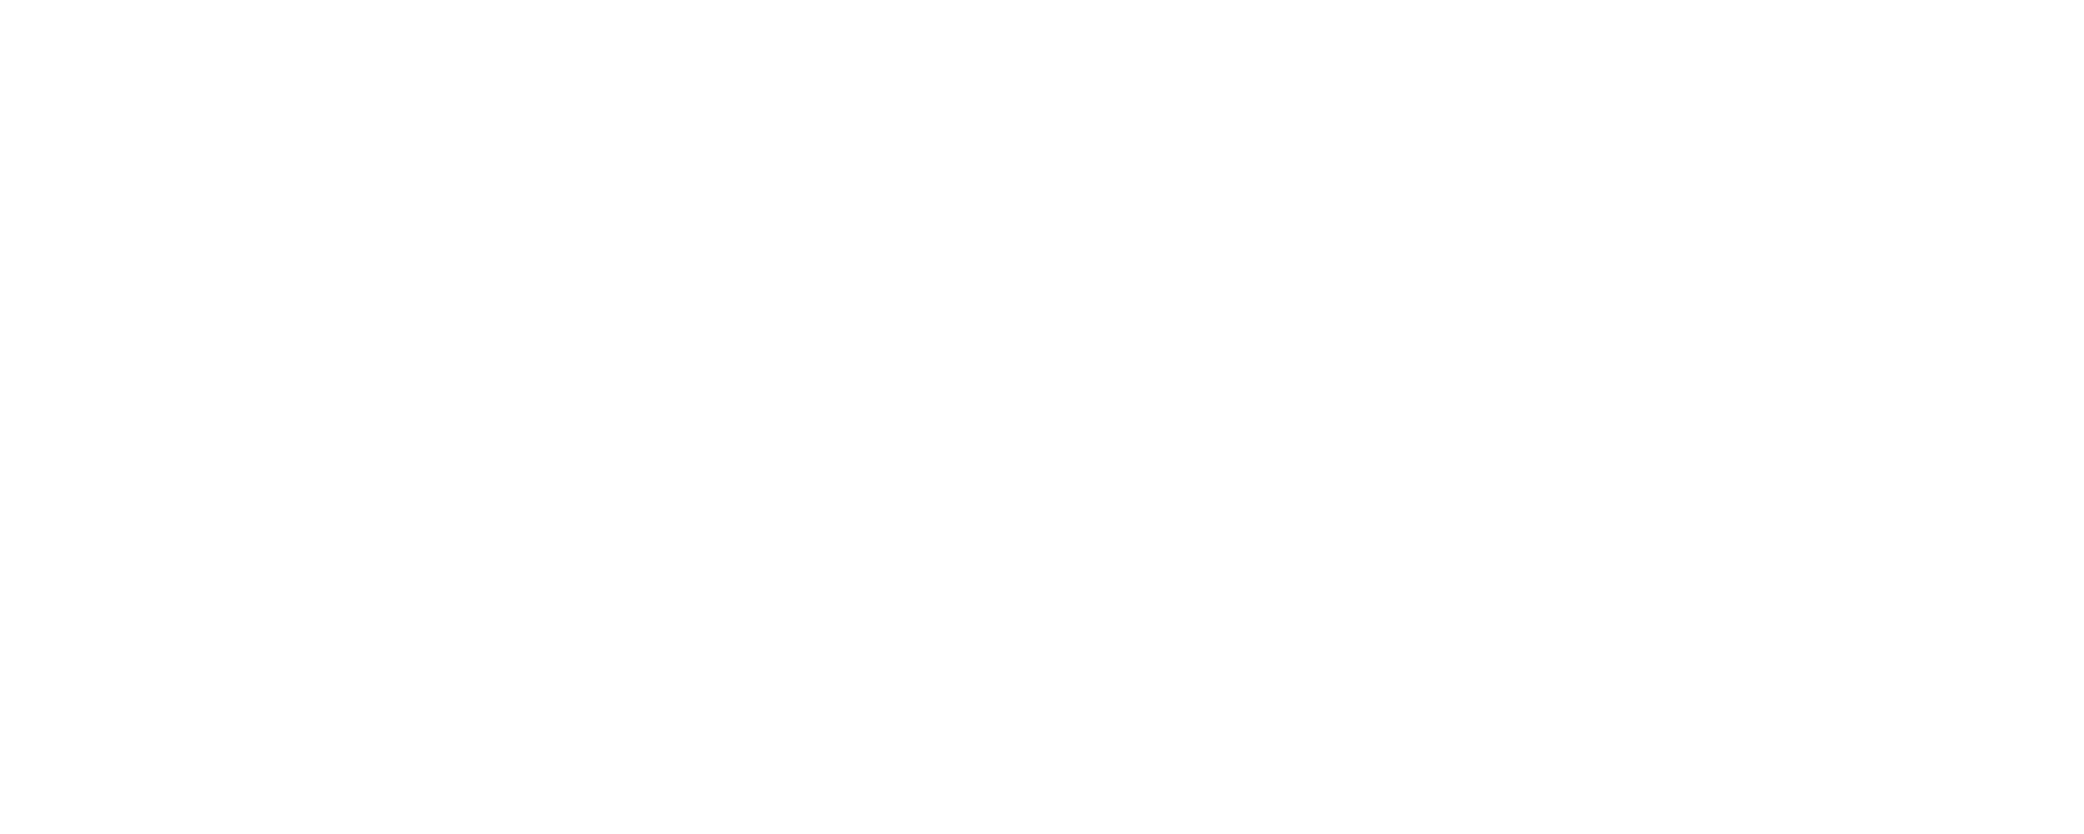 Roche White 3 logo